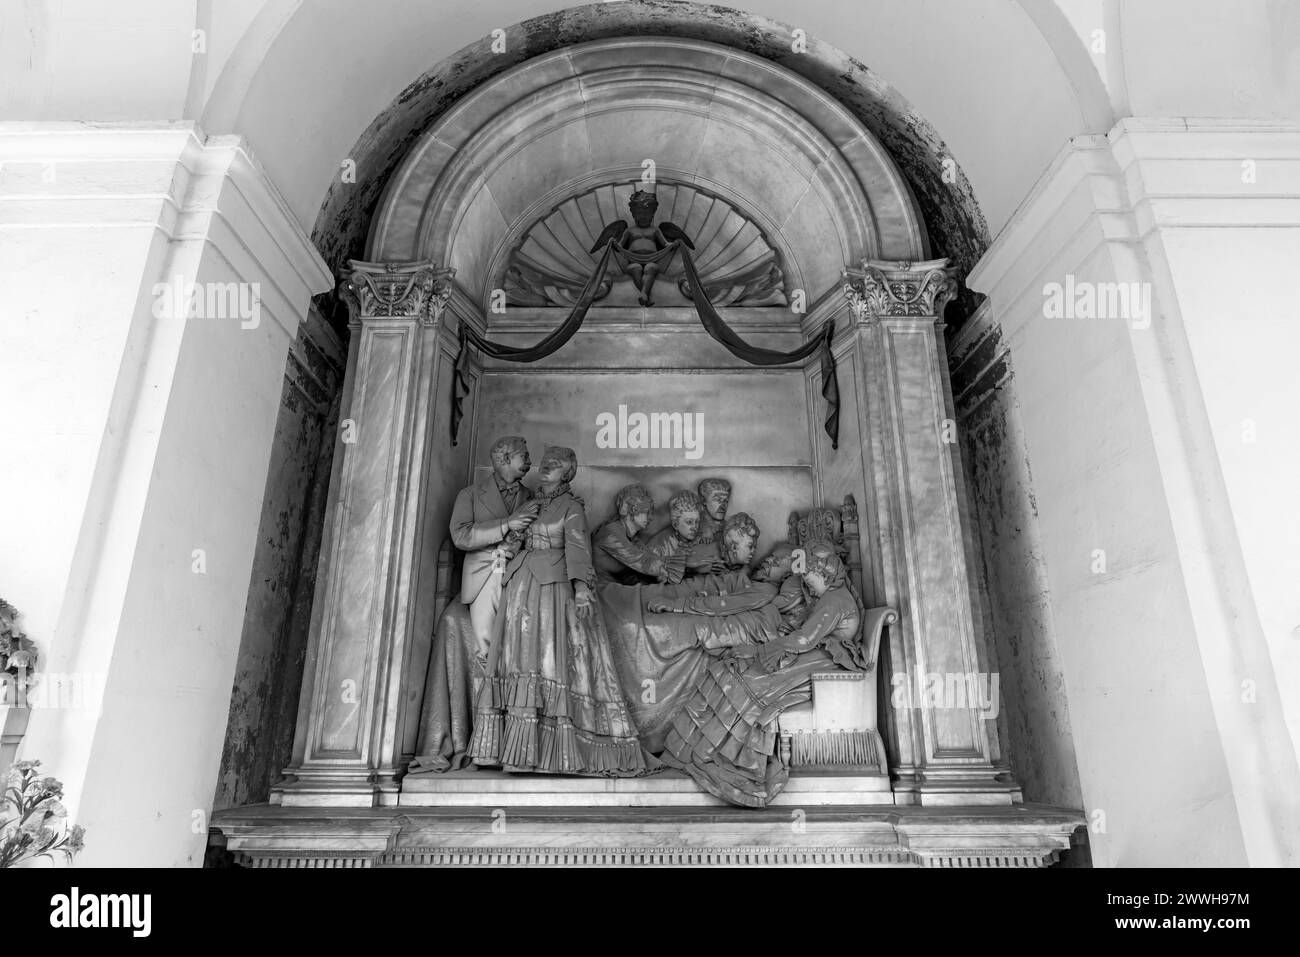 Gruppo scultoreo presso la tomba del padre, Cimitero Monumentale, Cimitero monumentale di Staglieno), Genova, Italia Foto Stock